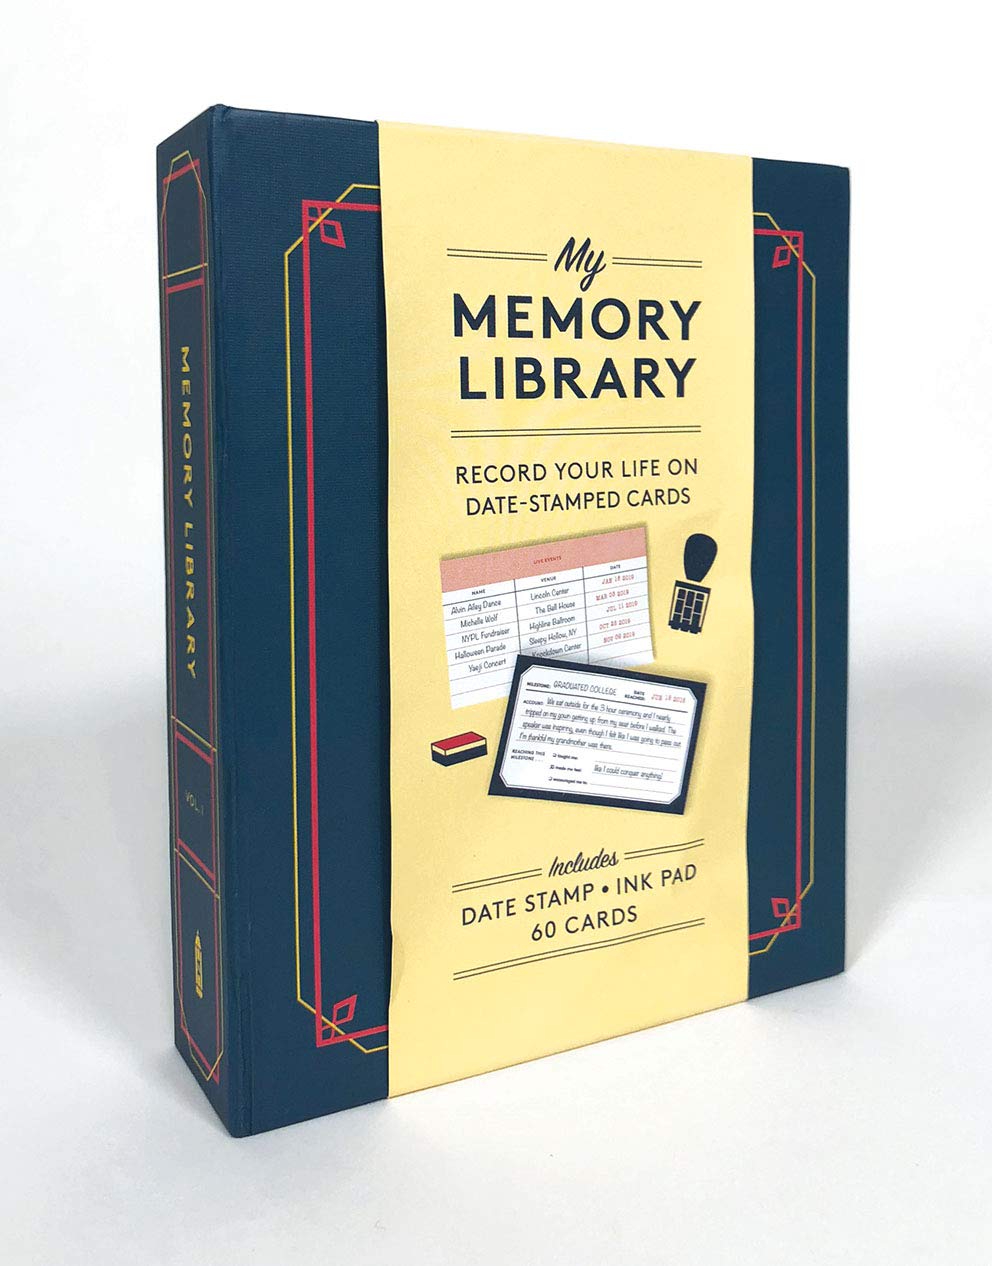 memory box book review